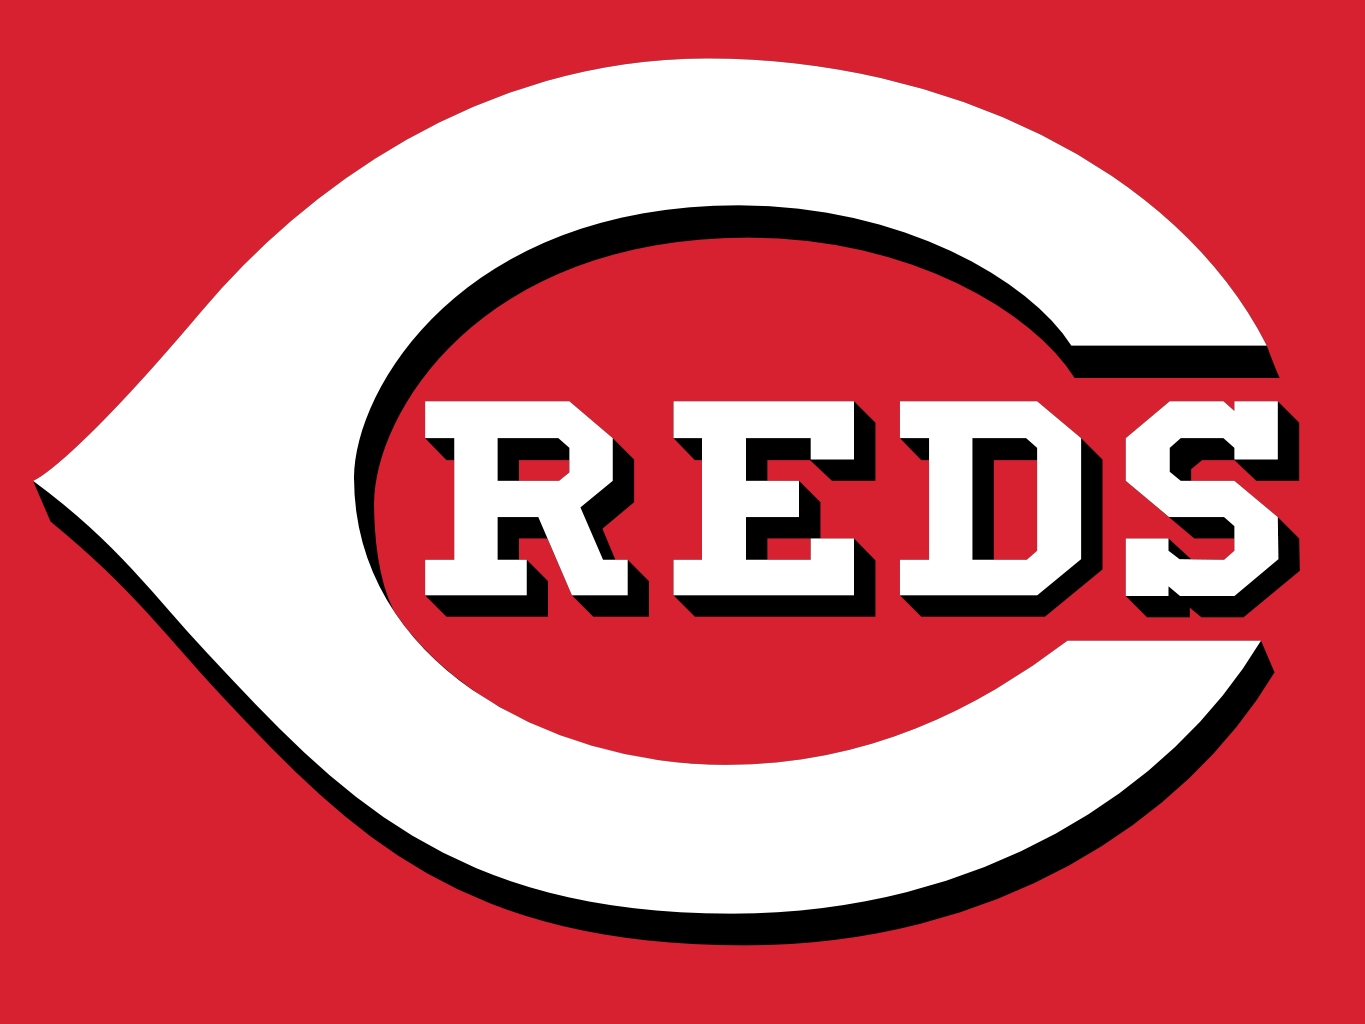 5. Cincinnati Reds